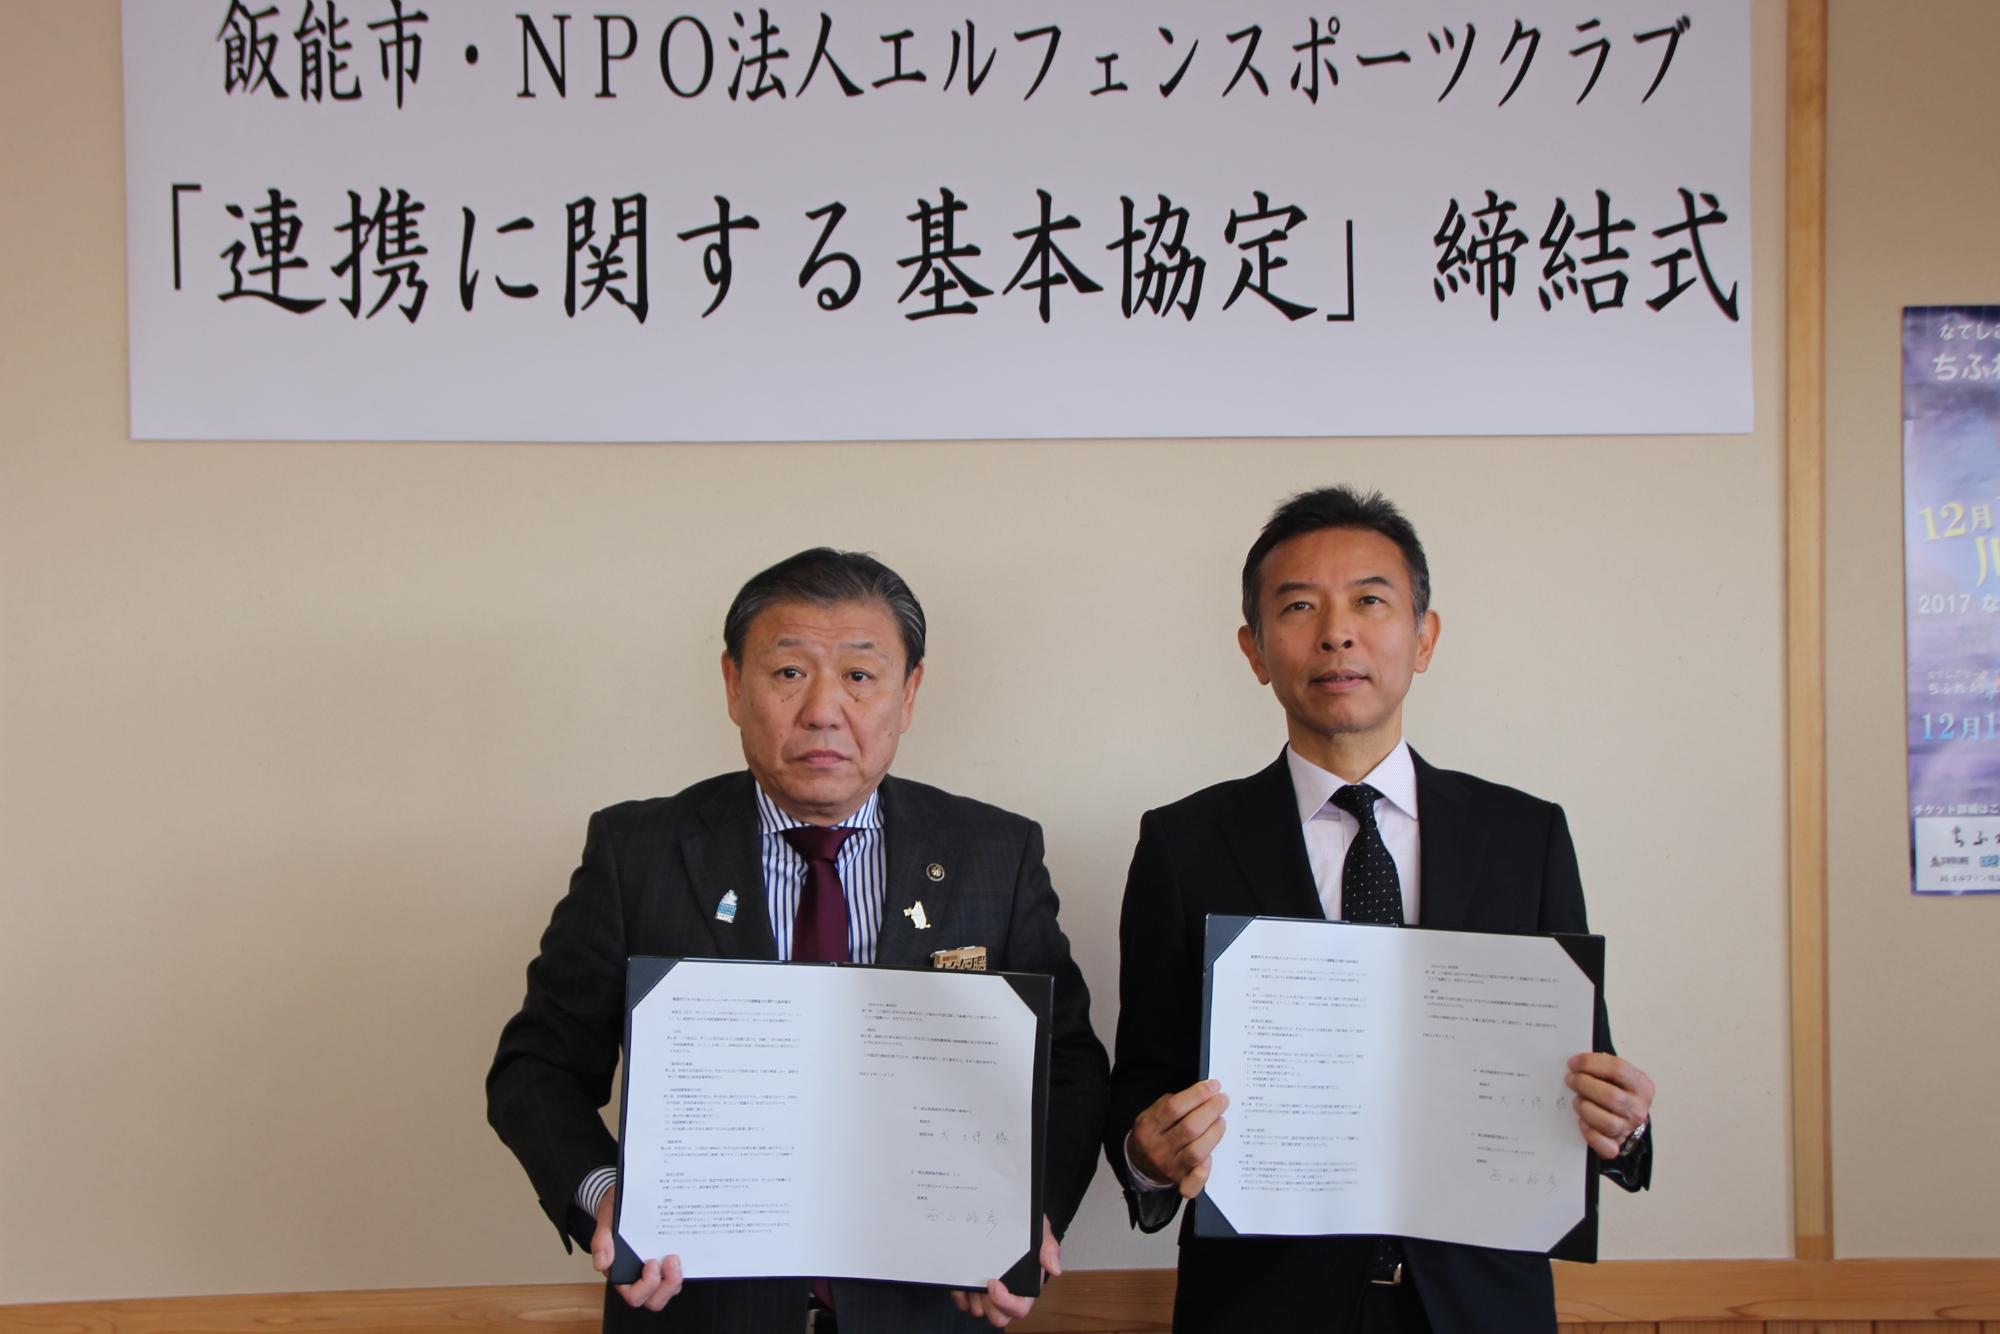 市長と:NPO法人エルフェンスポーツクラブの理事長が協定書を手に持ち並んで撮影している写真